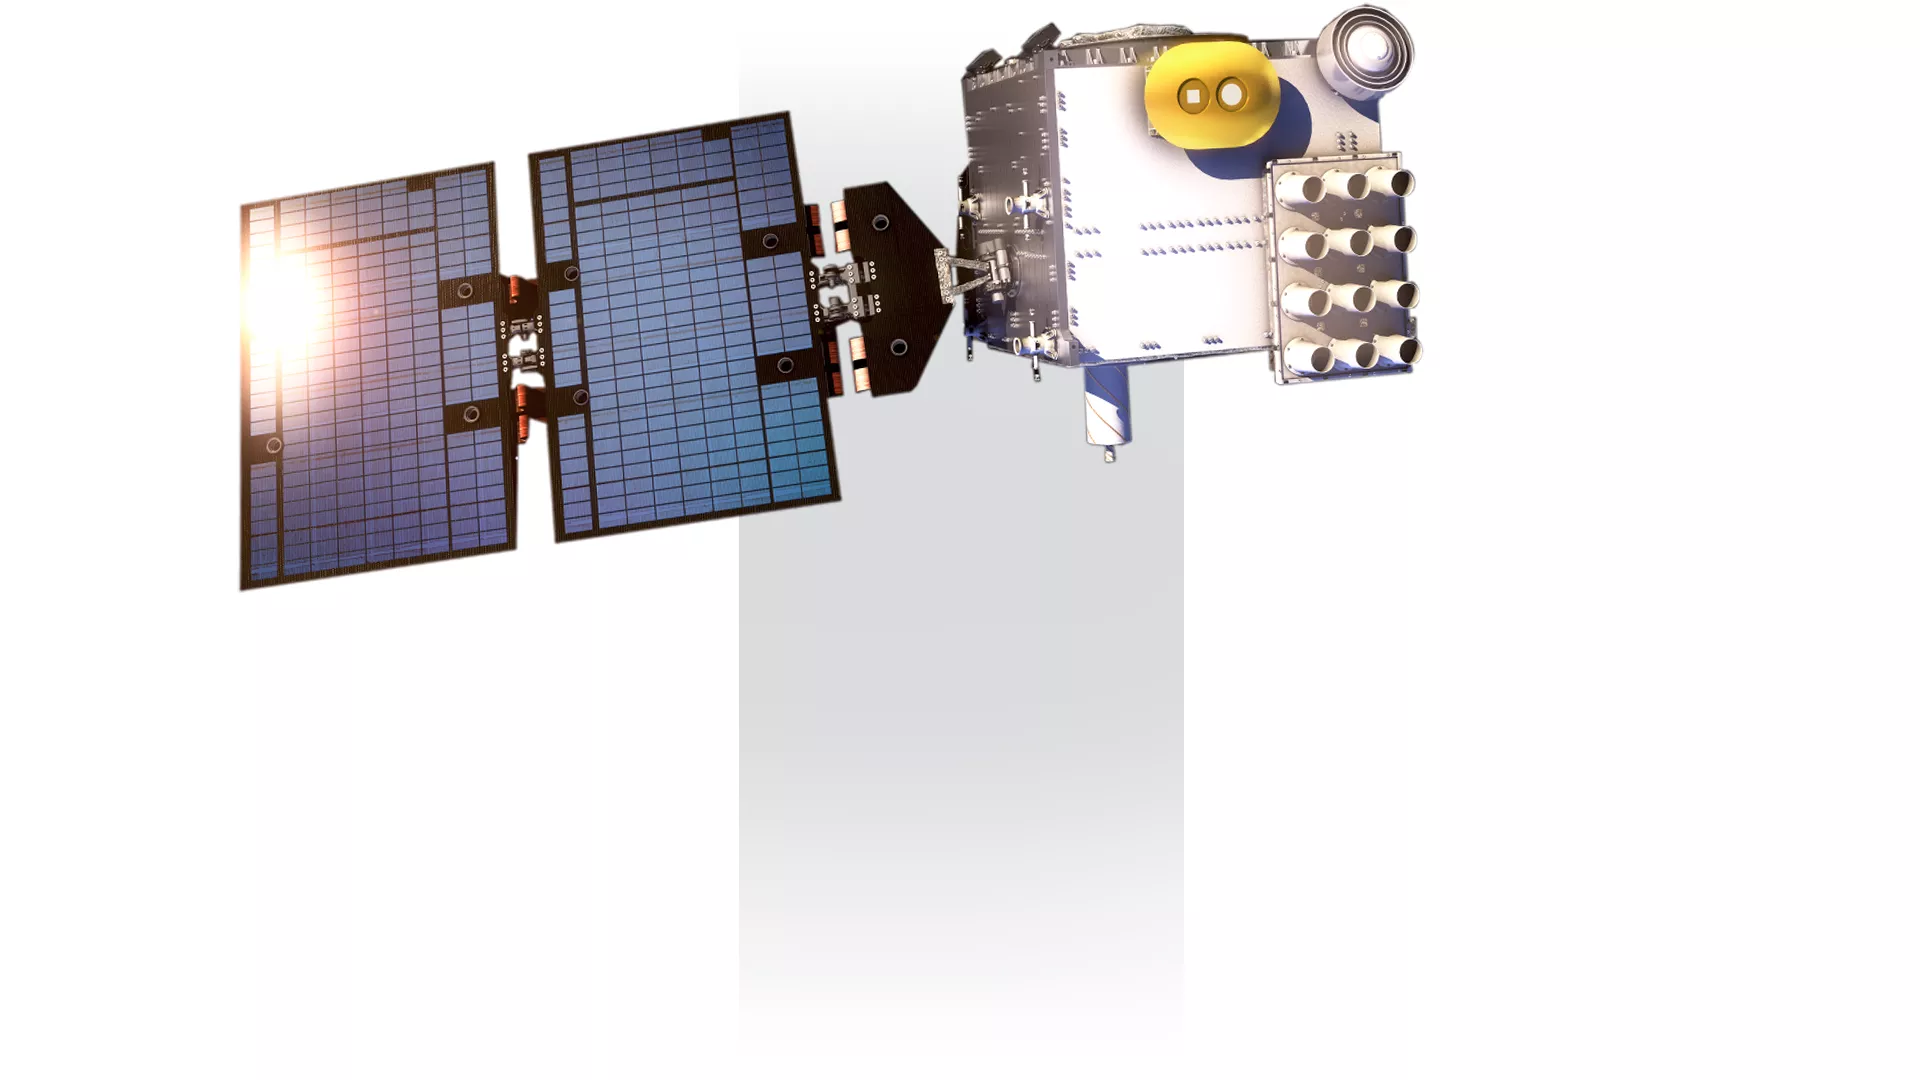 COSMIC-2 satellite